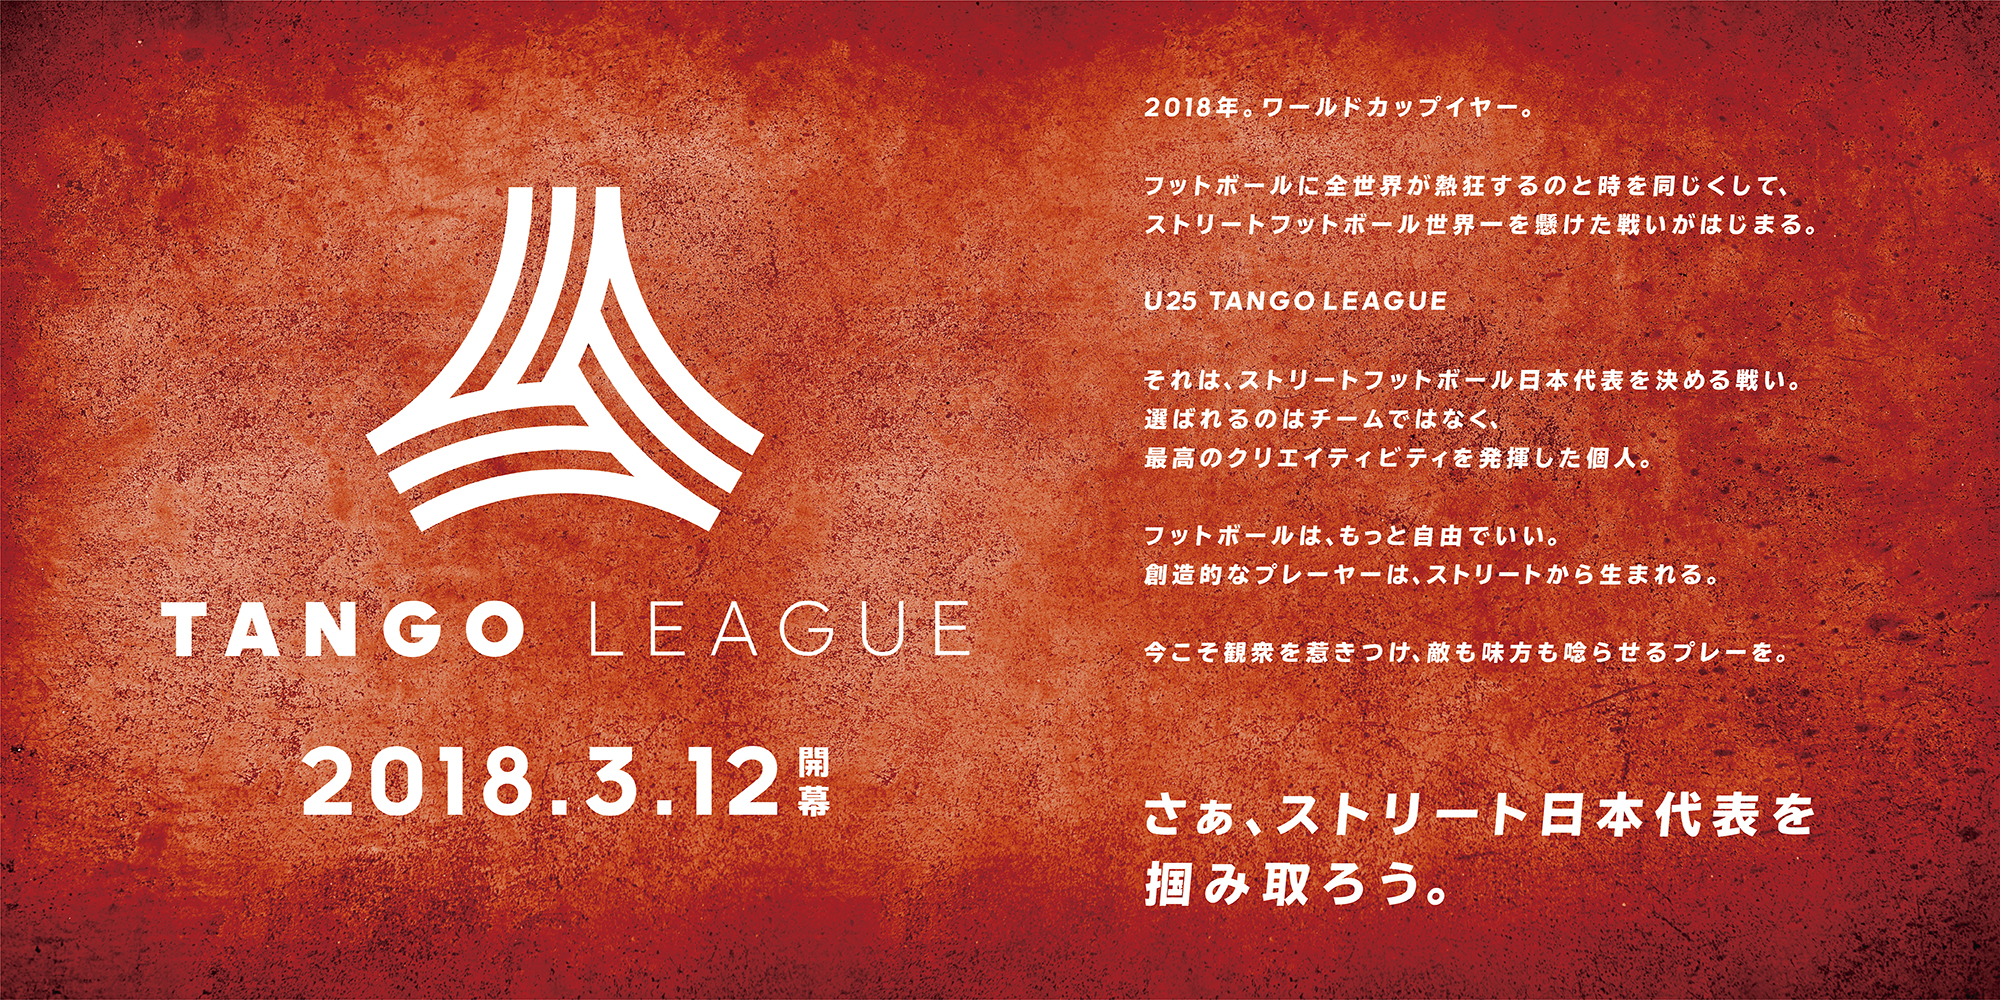 フットボールは もっと自由でいい 創造的なプレーヤーは ストリートから生まれる さあ ストリート日本代表 を掴み取ろう Tango League 3月12日 月 開幕 アディダス ジャパン株式会社のプレスリリース